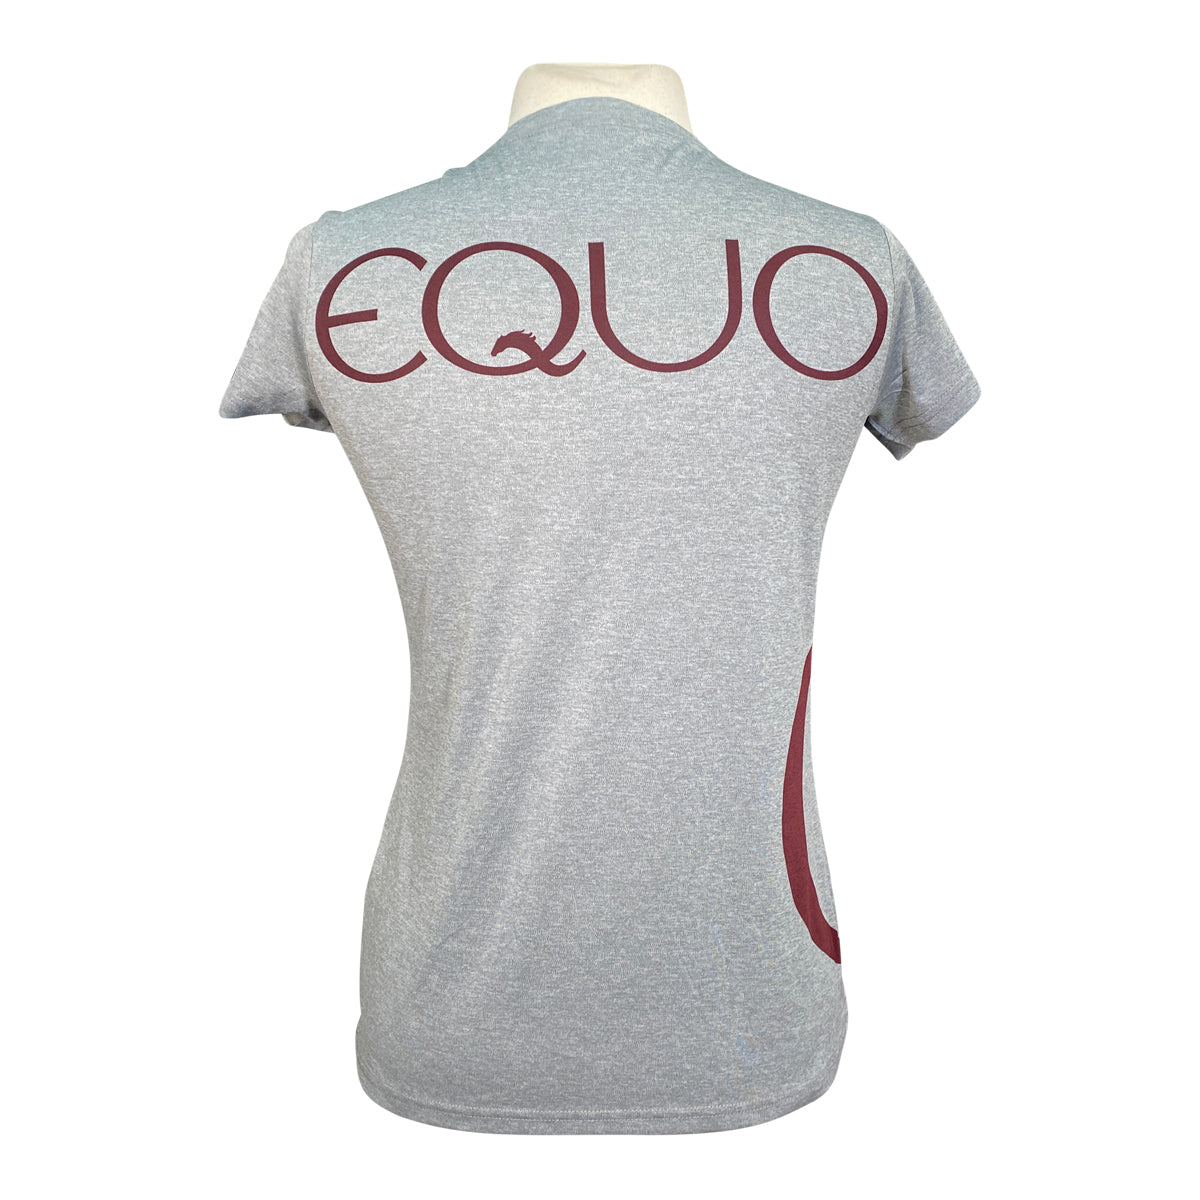 Equo Short Sleeve Training Shirt in Grey